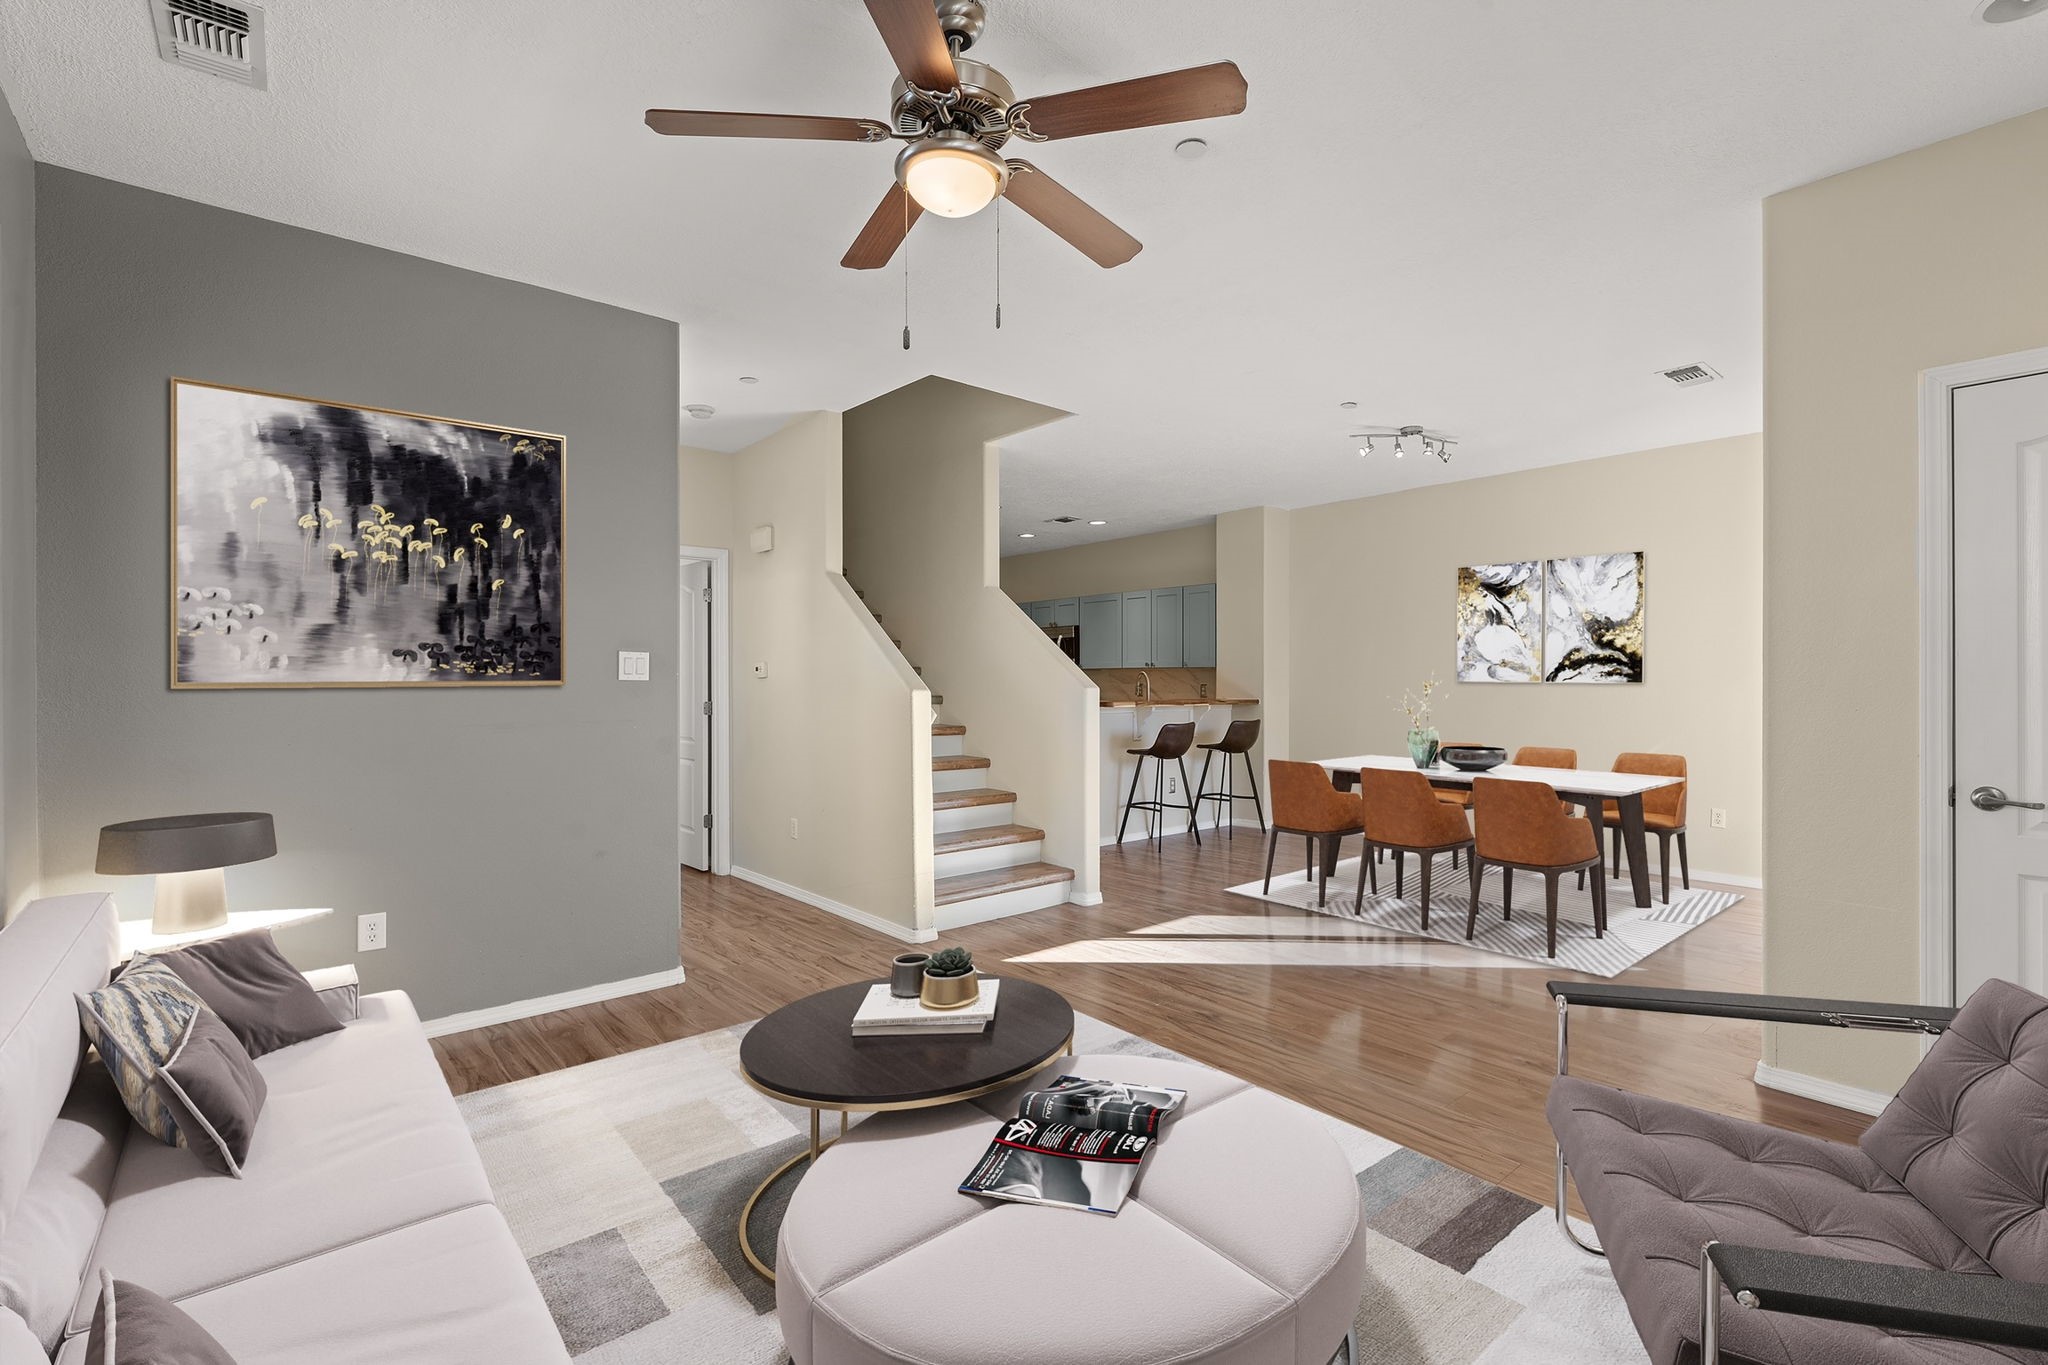 Living room with open floorplan